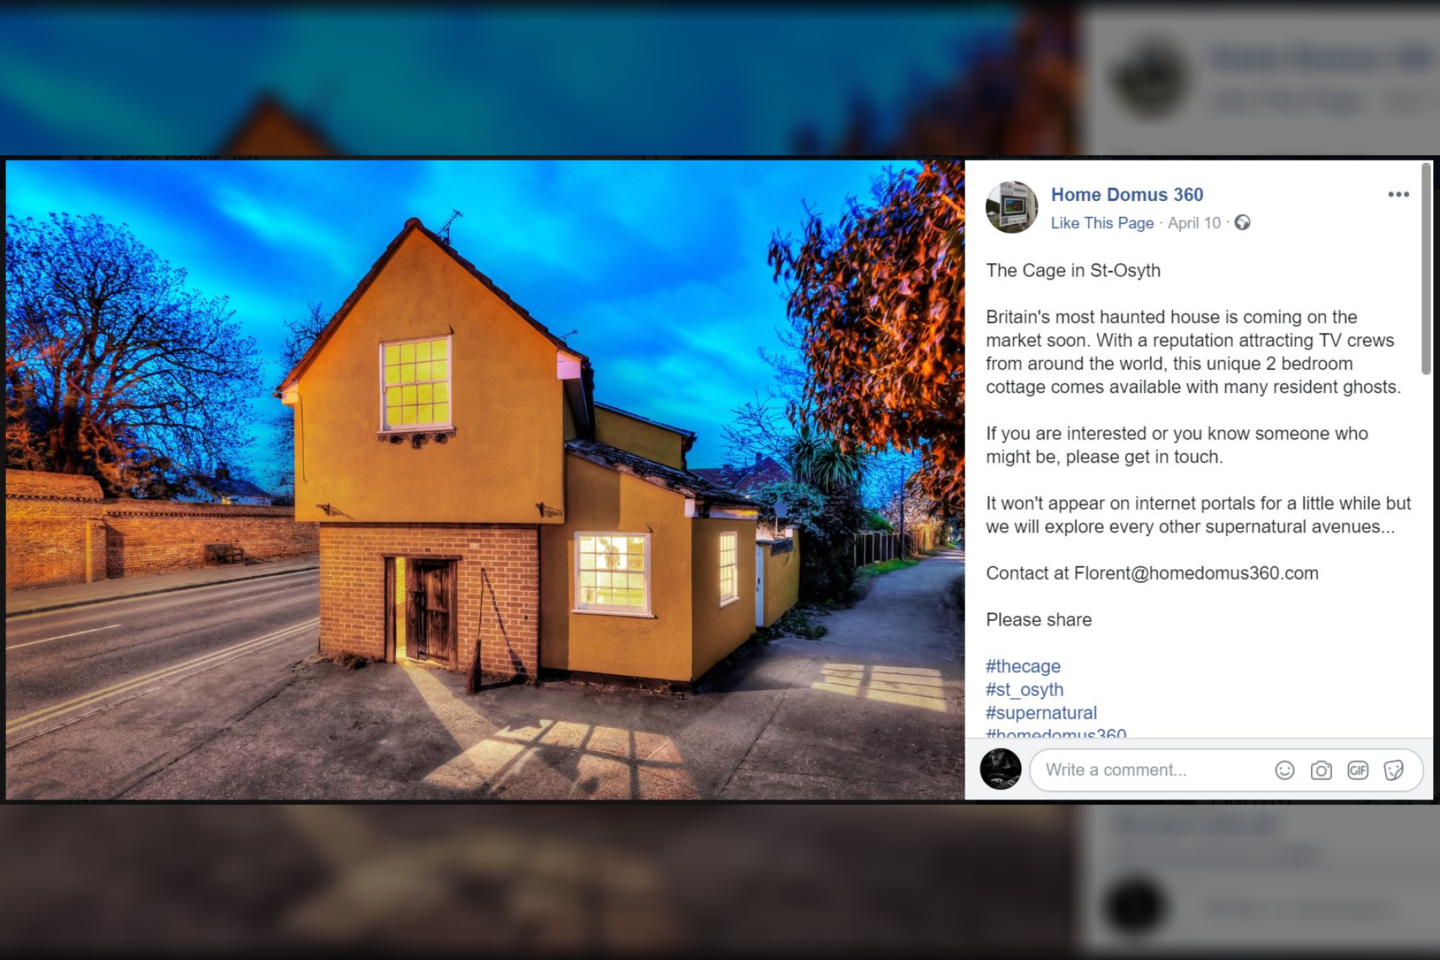  Kai kas sako, kad tai yra ir labiausiai apsėstas namas Anglijoje, „Facebook“ paskyroje rašo namą pardavinėjanti nekilnojamo turo agentūra.<br> Ekrano nuotr.